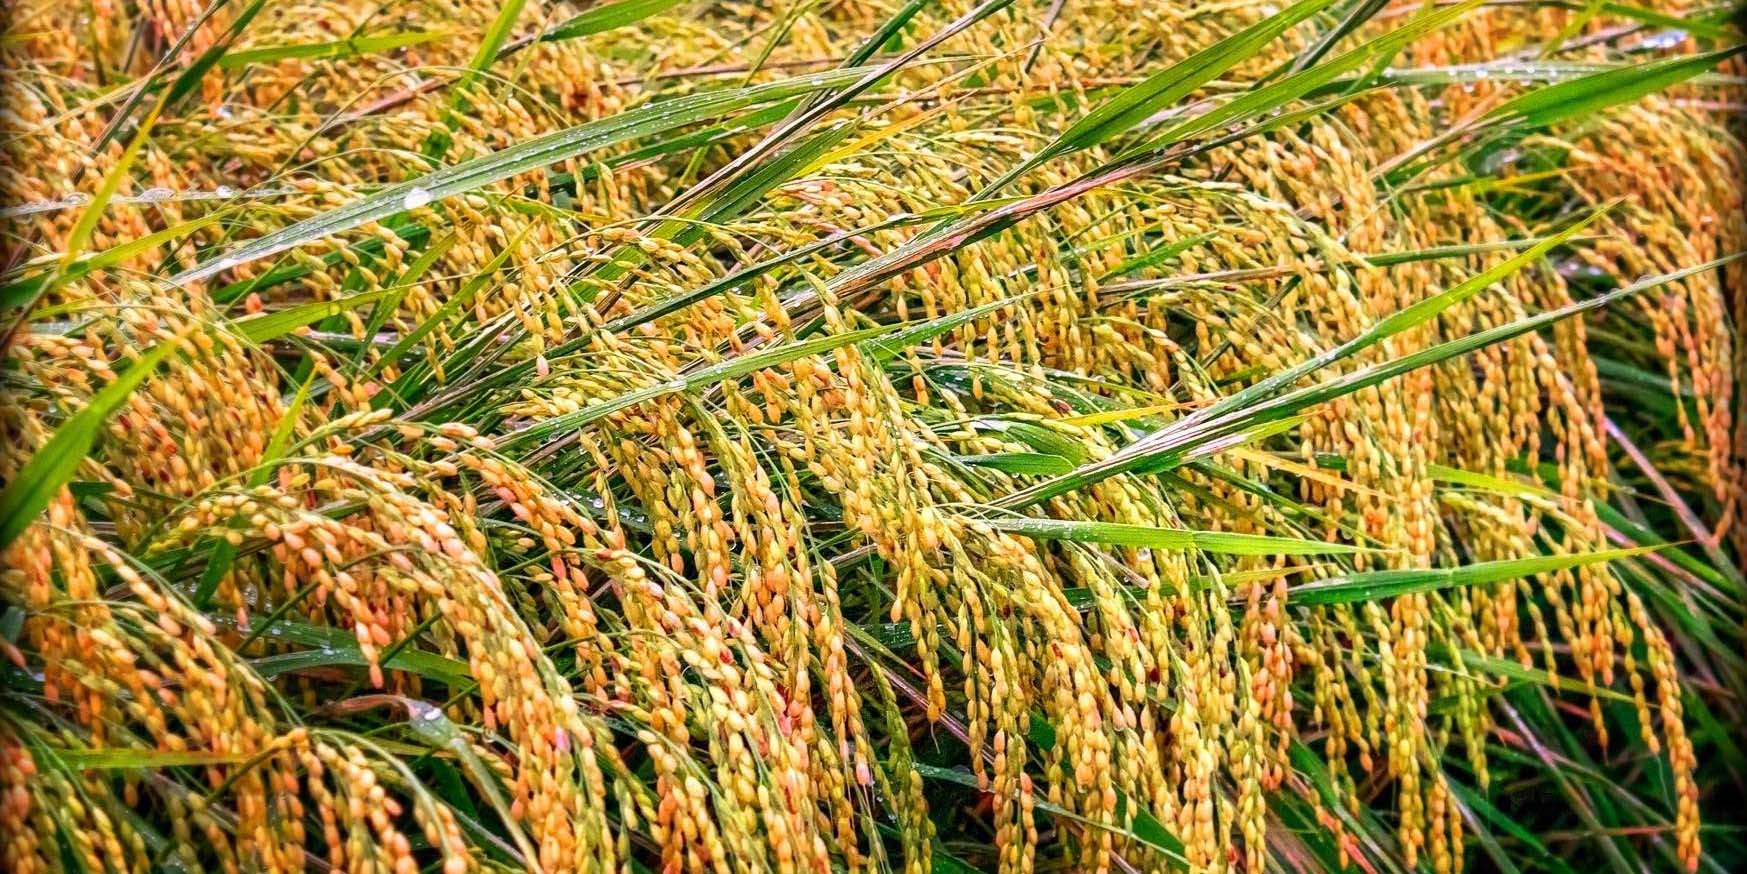 کاهش 15.3 درصدی قیمت برنج نسبت به پاییز 93